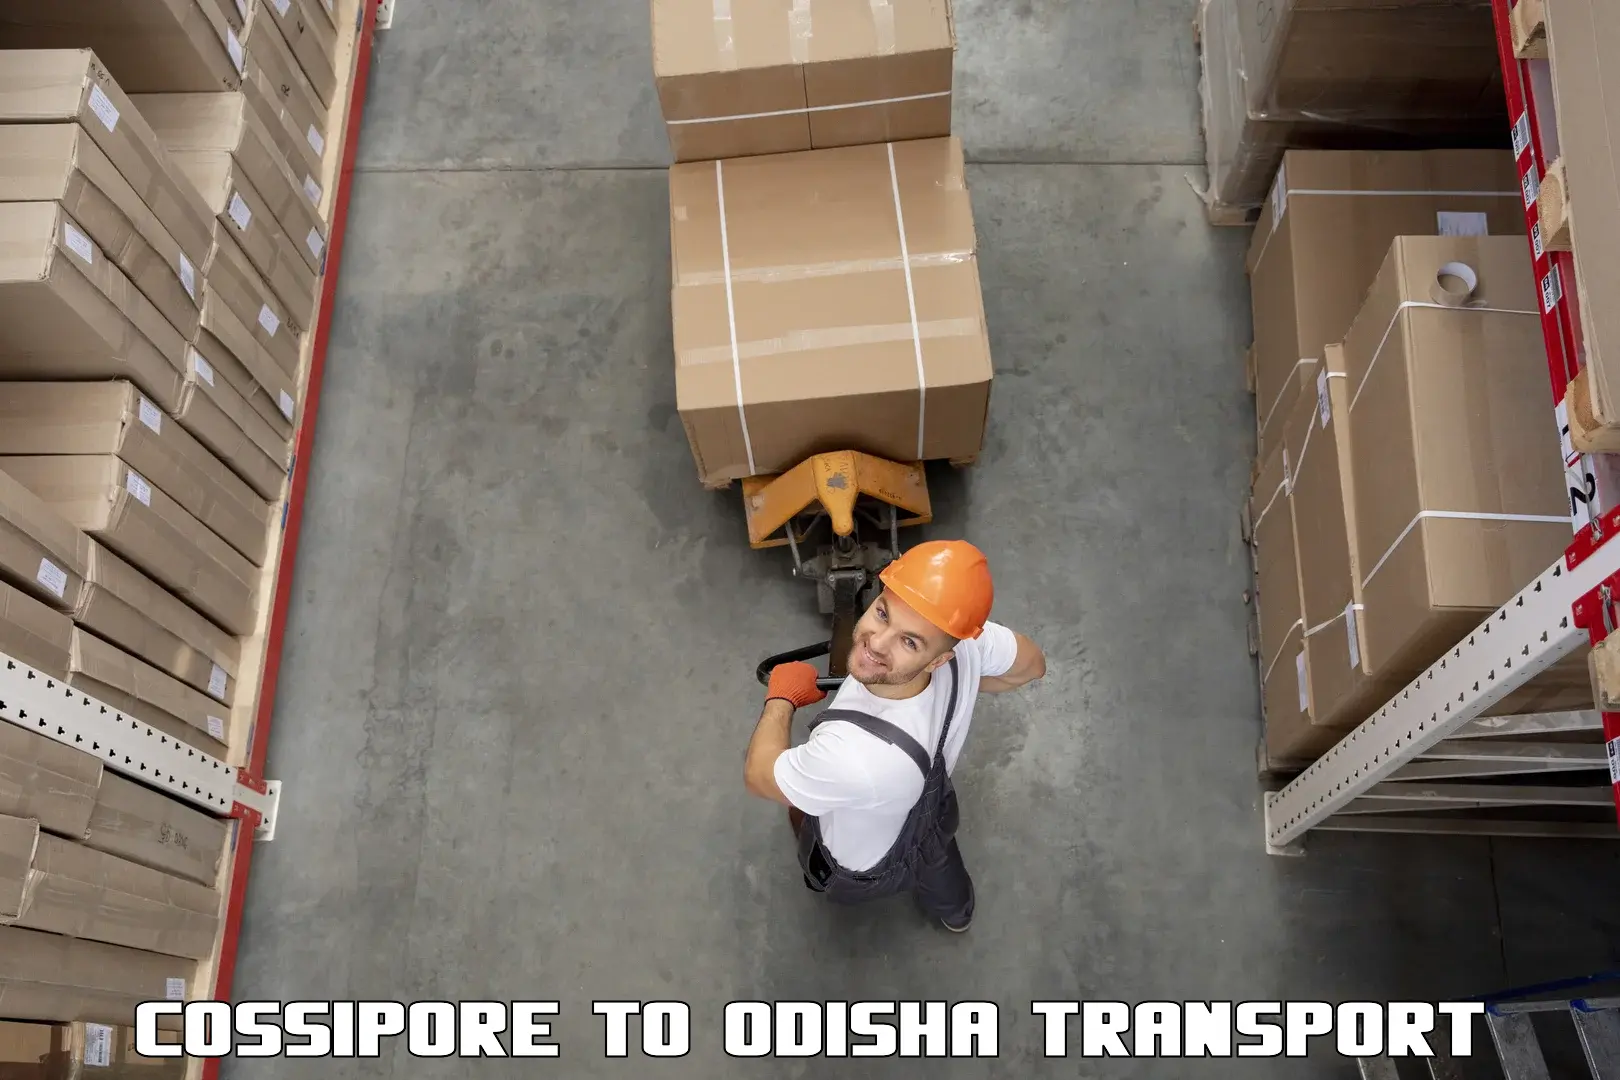 Transport services Cossipore to Daspalla